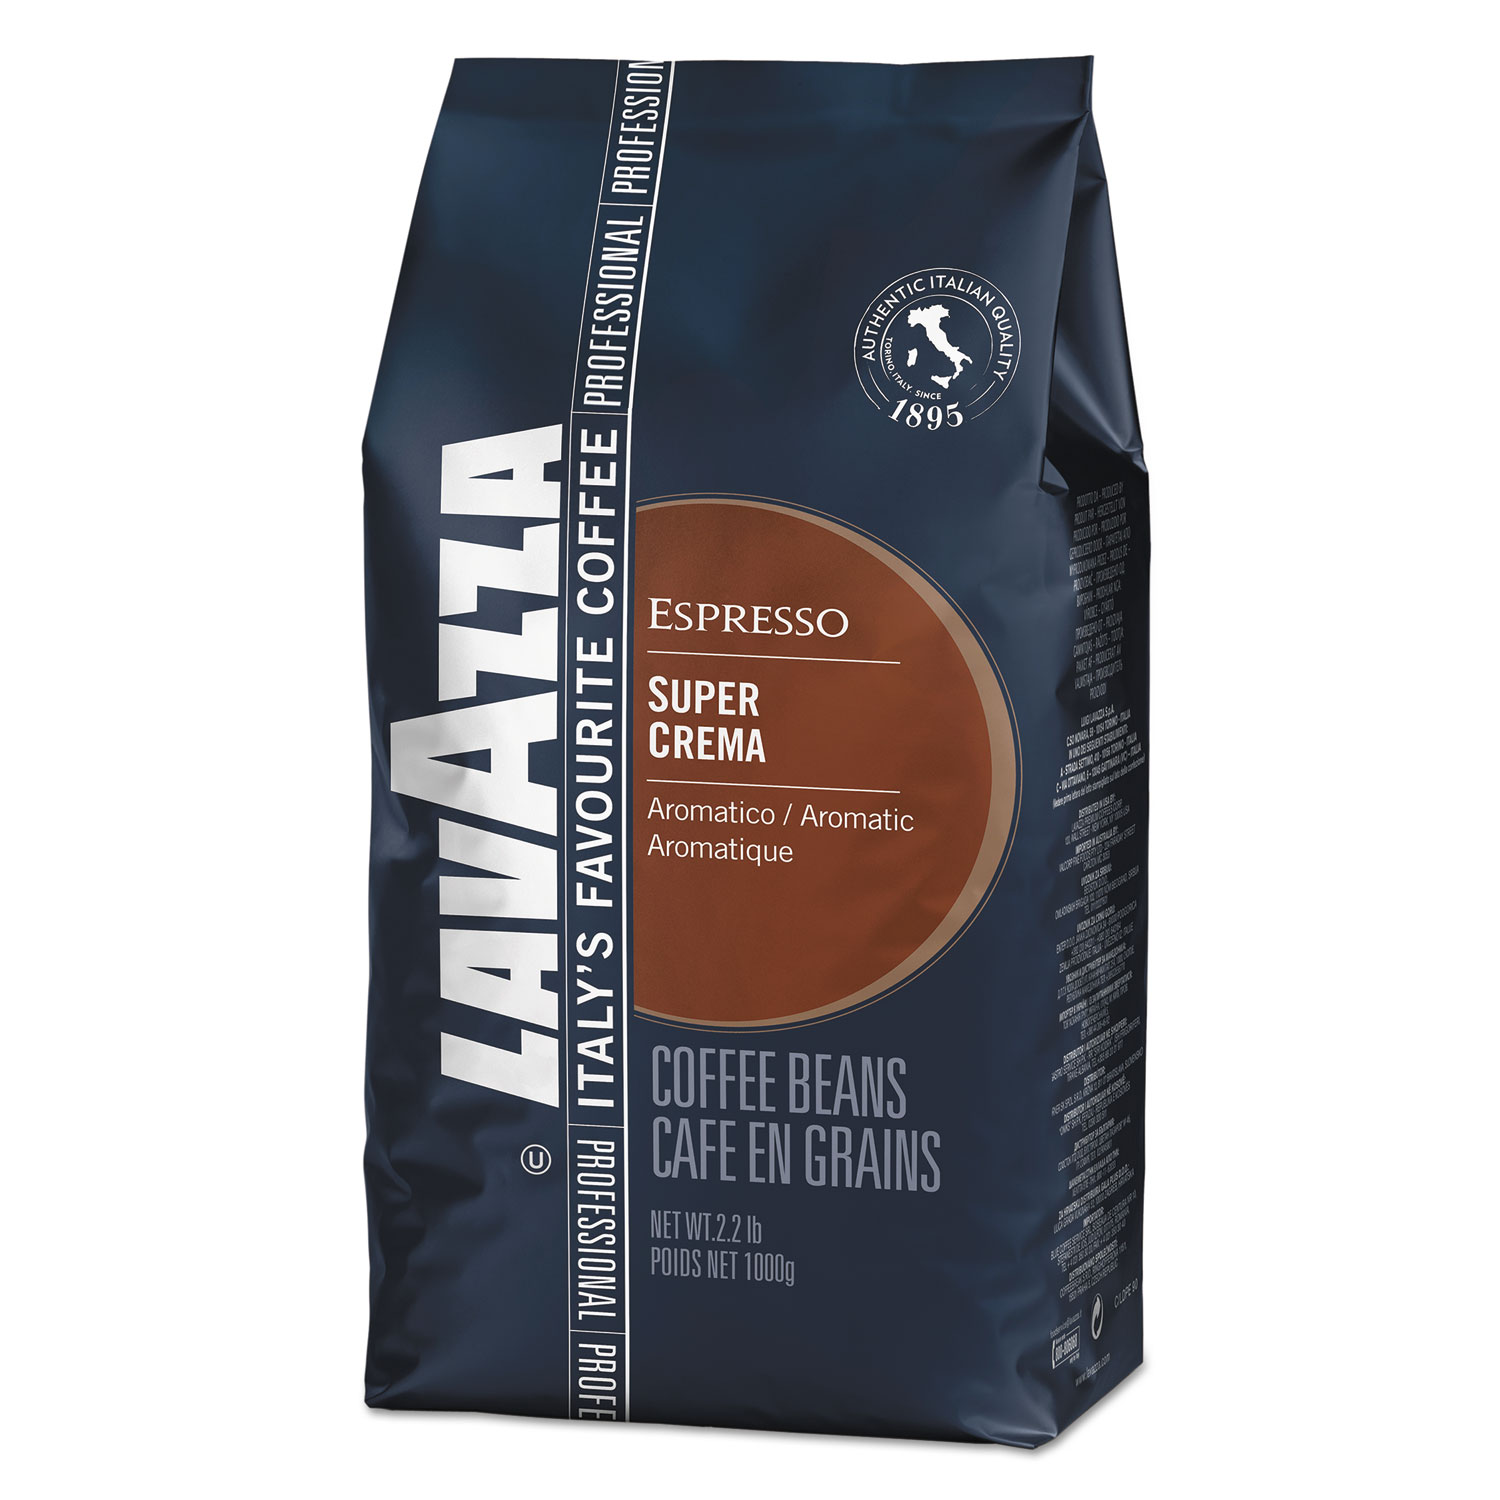  Lavazza 4202 Super Crema Whole Bean Espresso Coffee, 2.2lb Bag, Vacuum-Packed (LAV4202) 